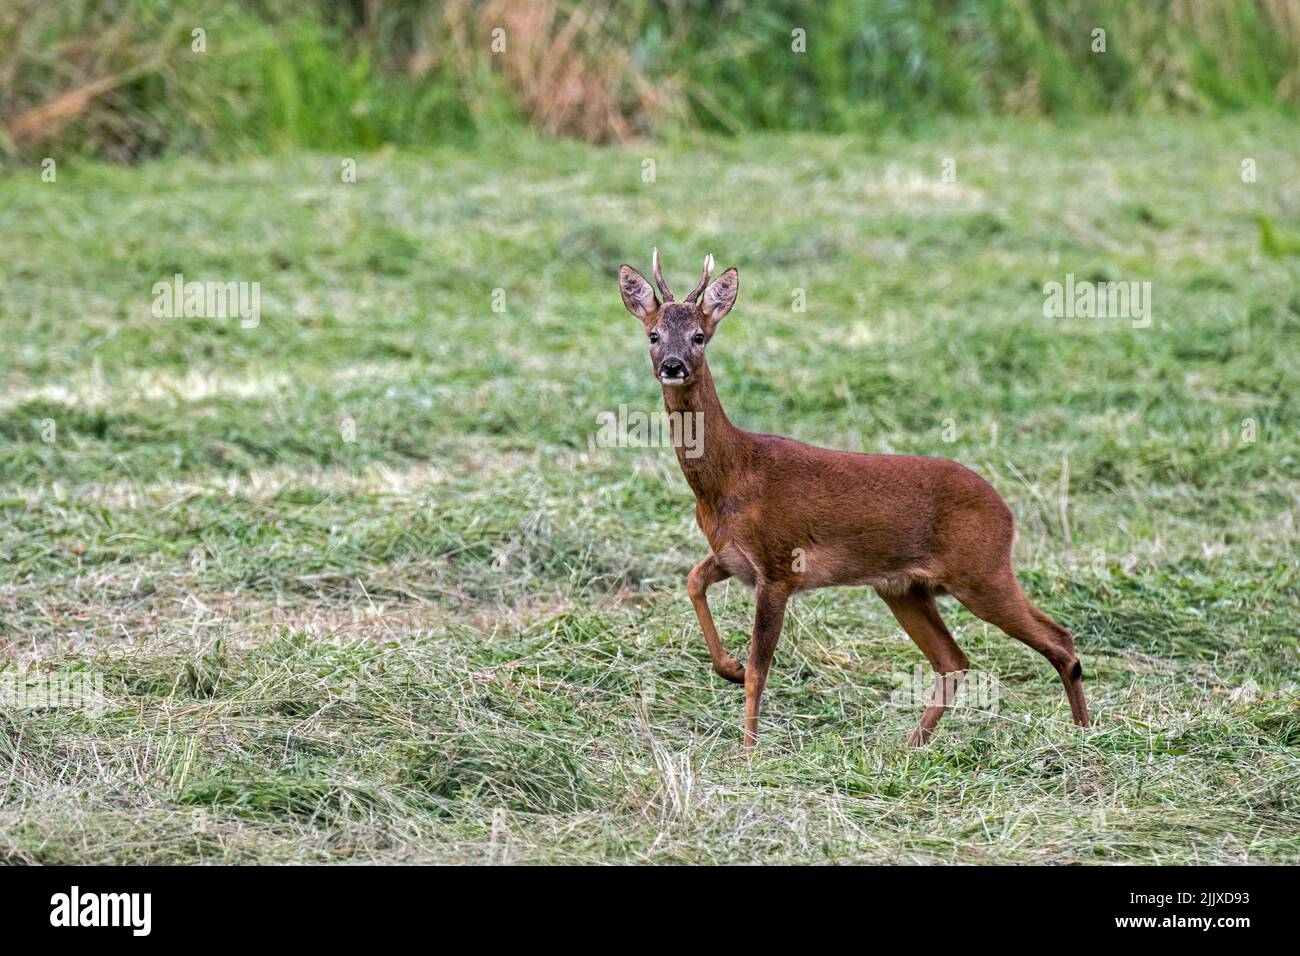 Alert European roe deer (Capreolus capreolus) male / roebuck standing in meadow / grassland and looking towards camera in summer Stock Photo